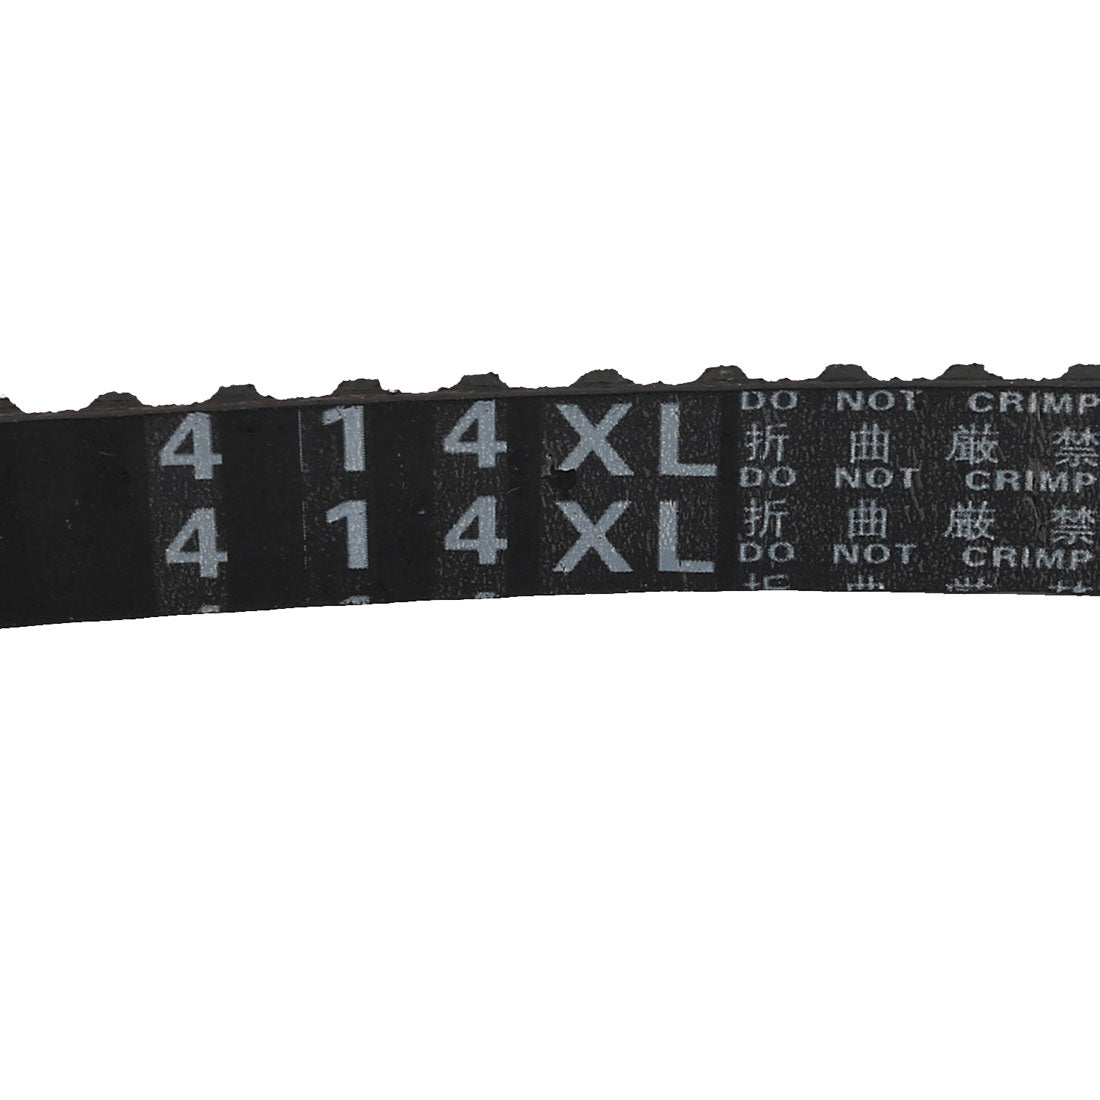 uxcell Uxcell 414XL 207 Teeth Stepper Timing Belt Geared-Belt 1051.56mm Perimeter 10mm Width